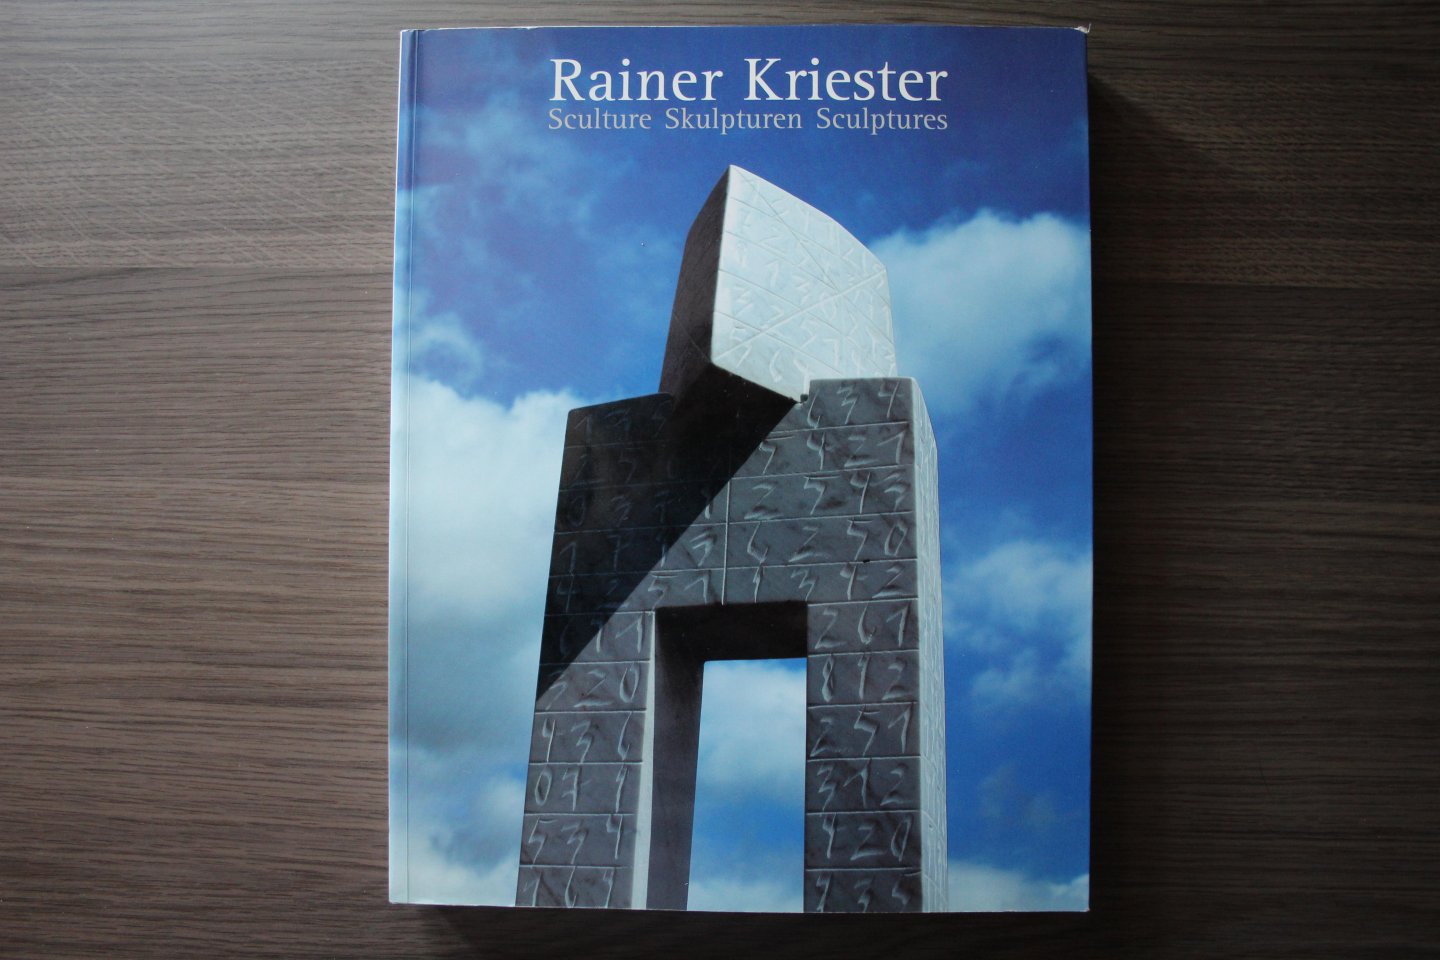  - Rainer Kriester / Sculture Skulpturen Sculptures